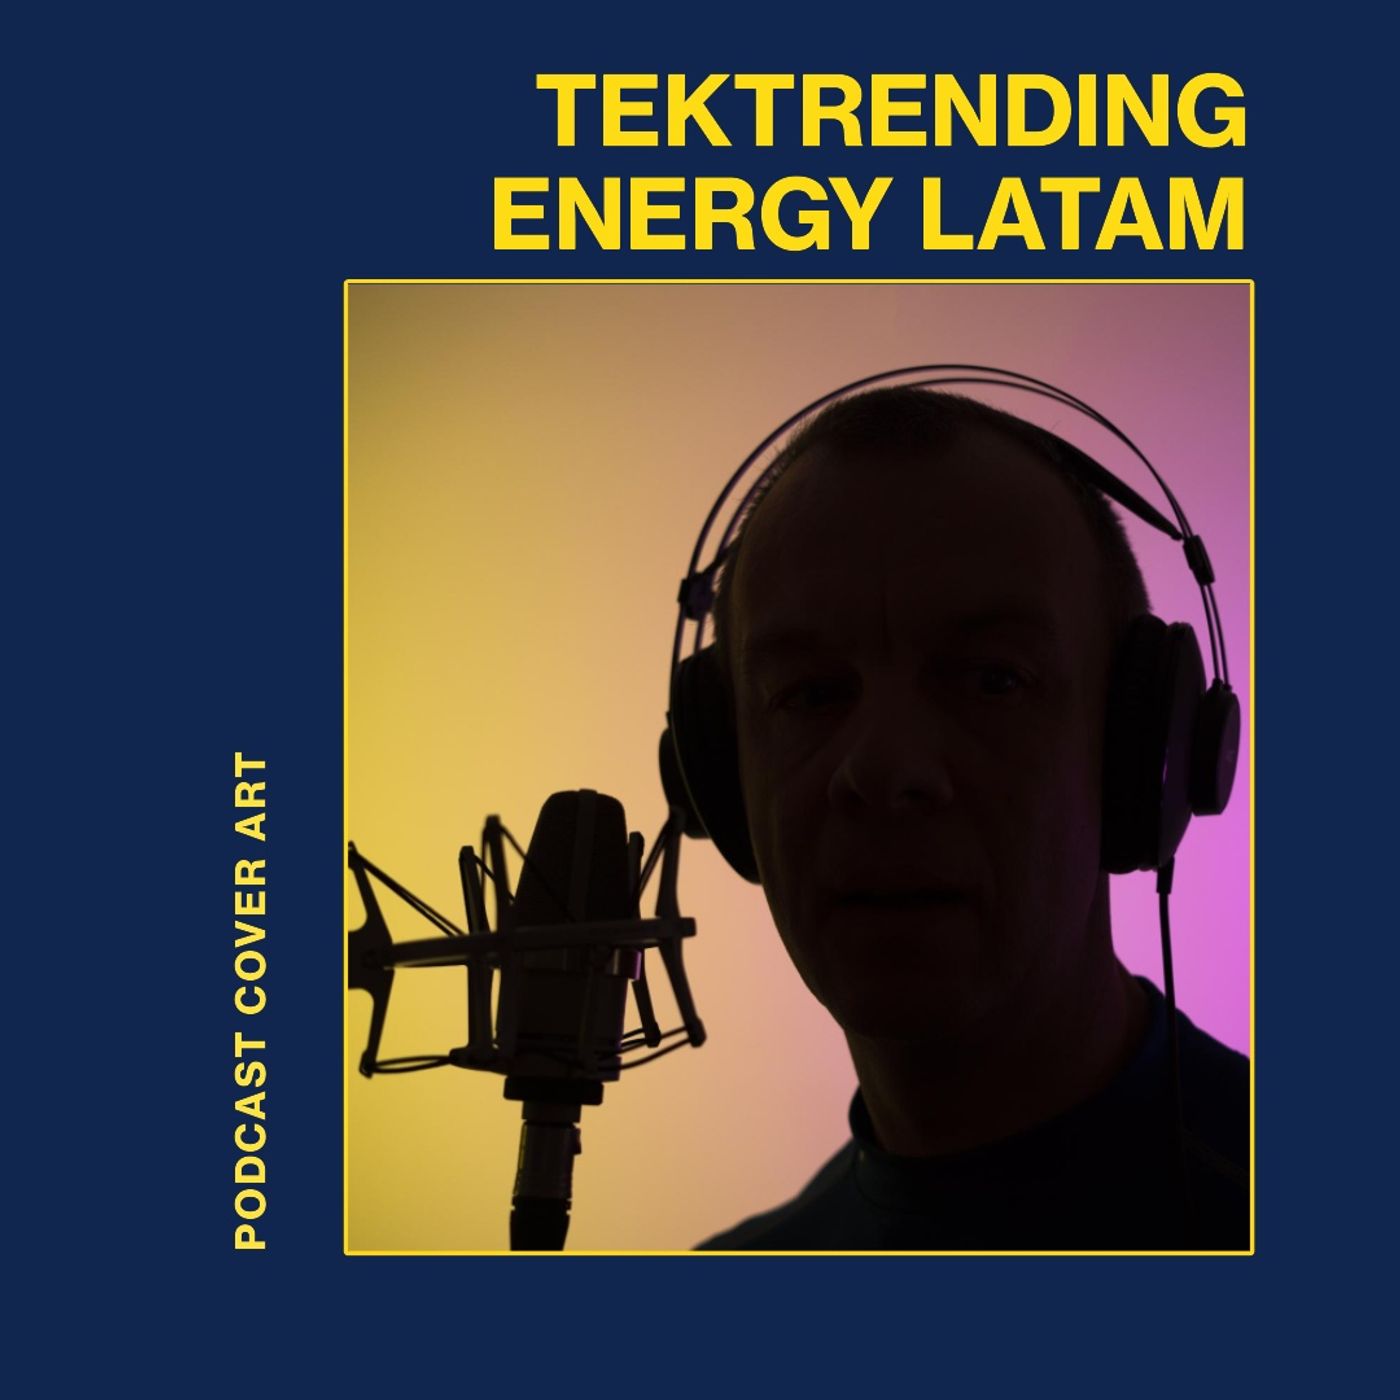 Tek Trending Energy Latin America